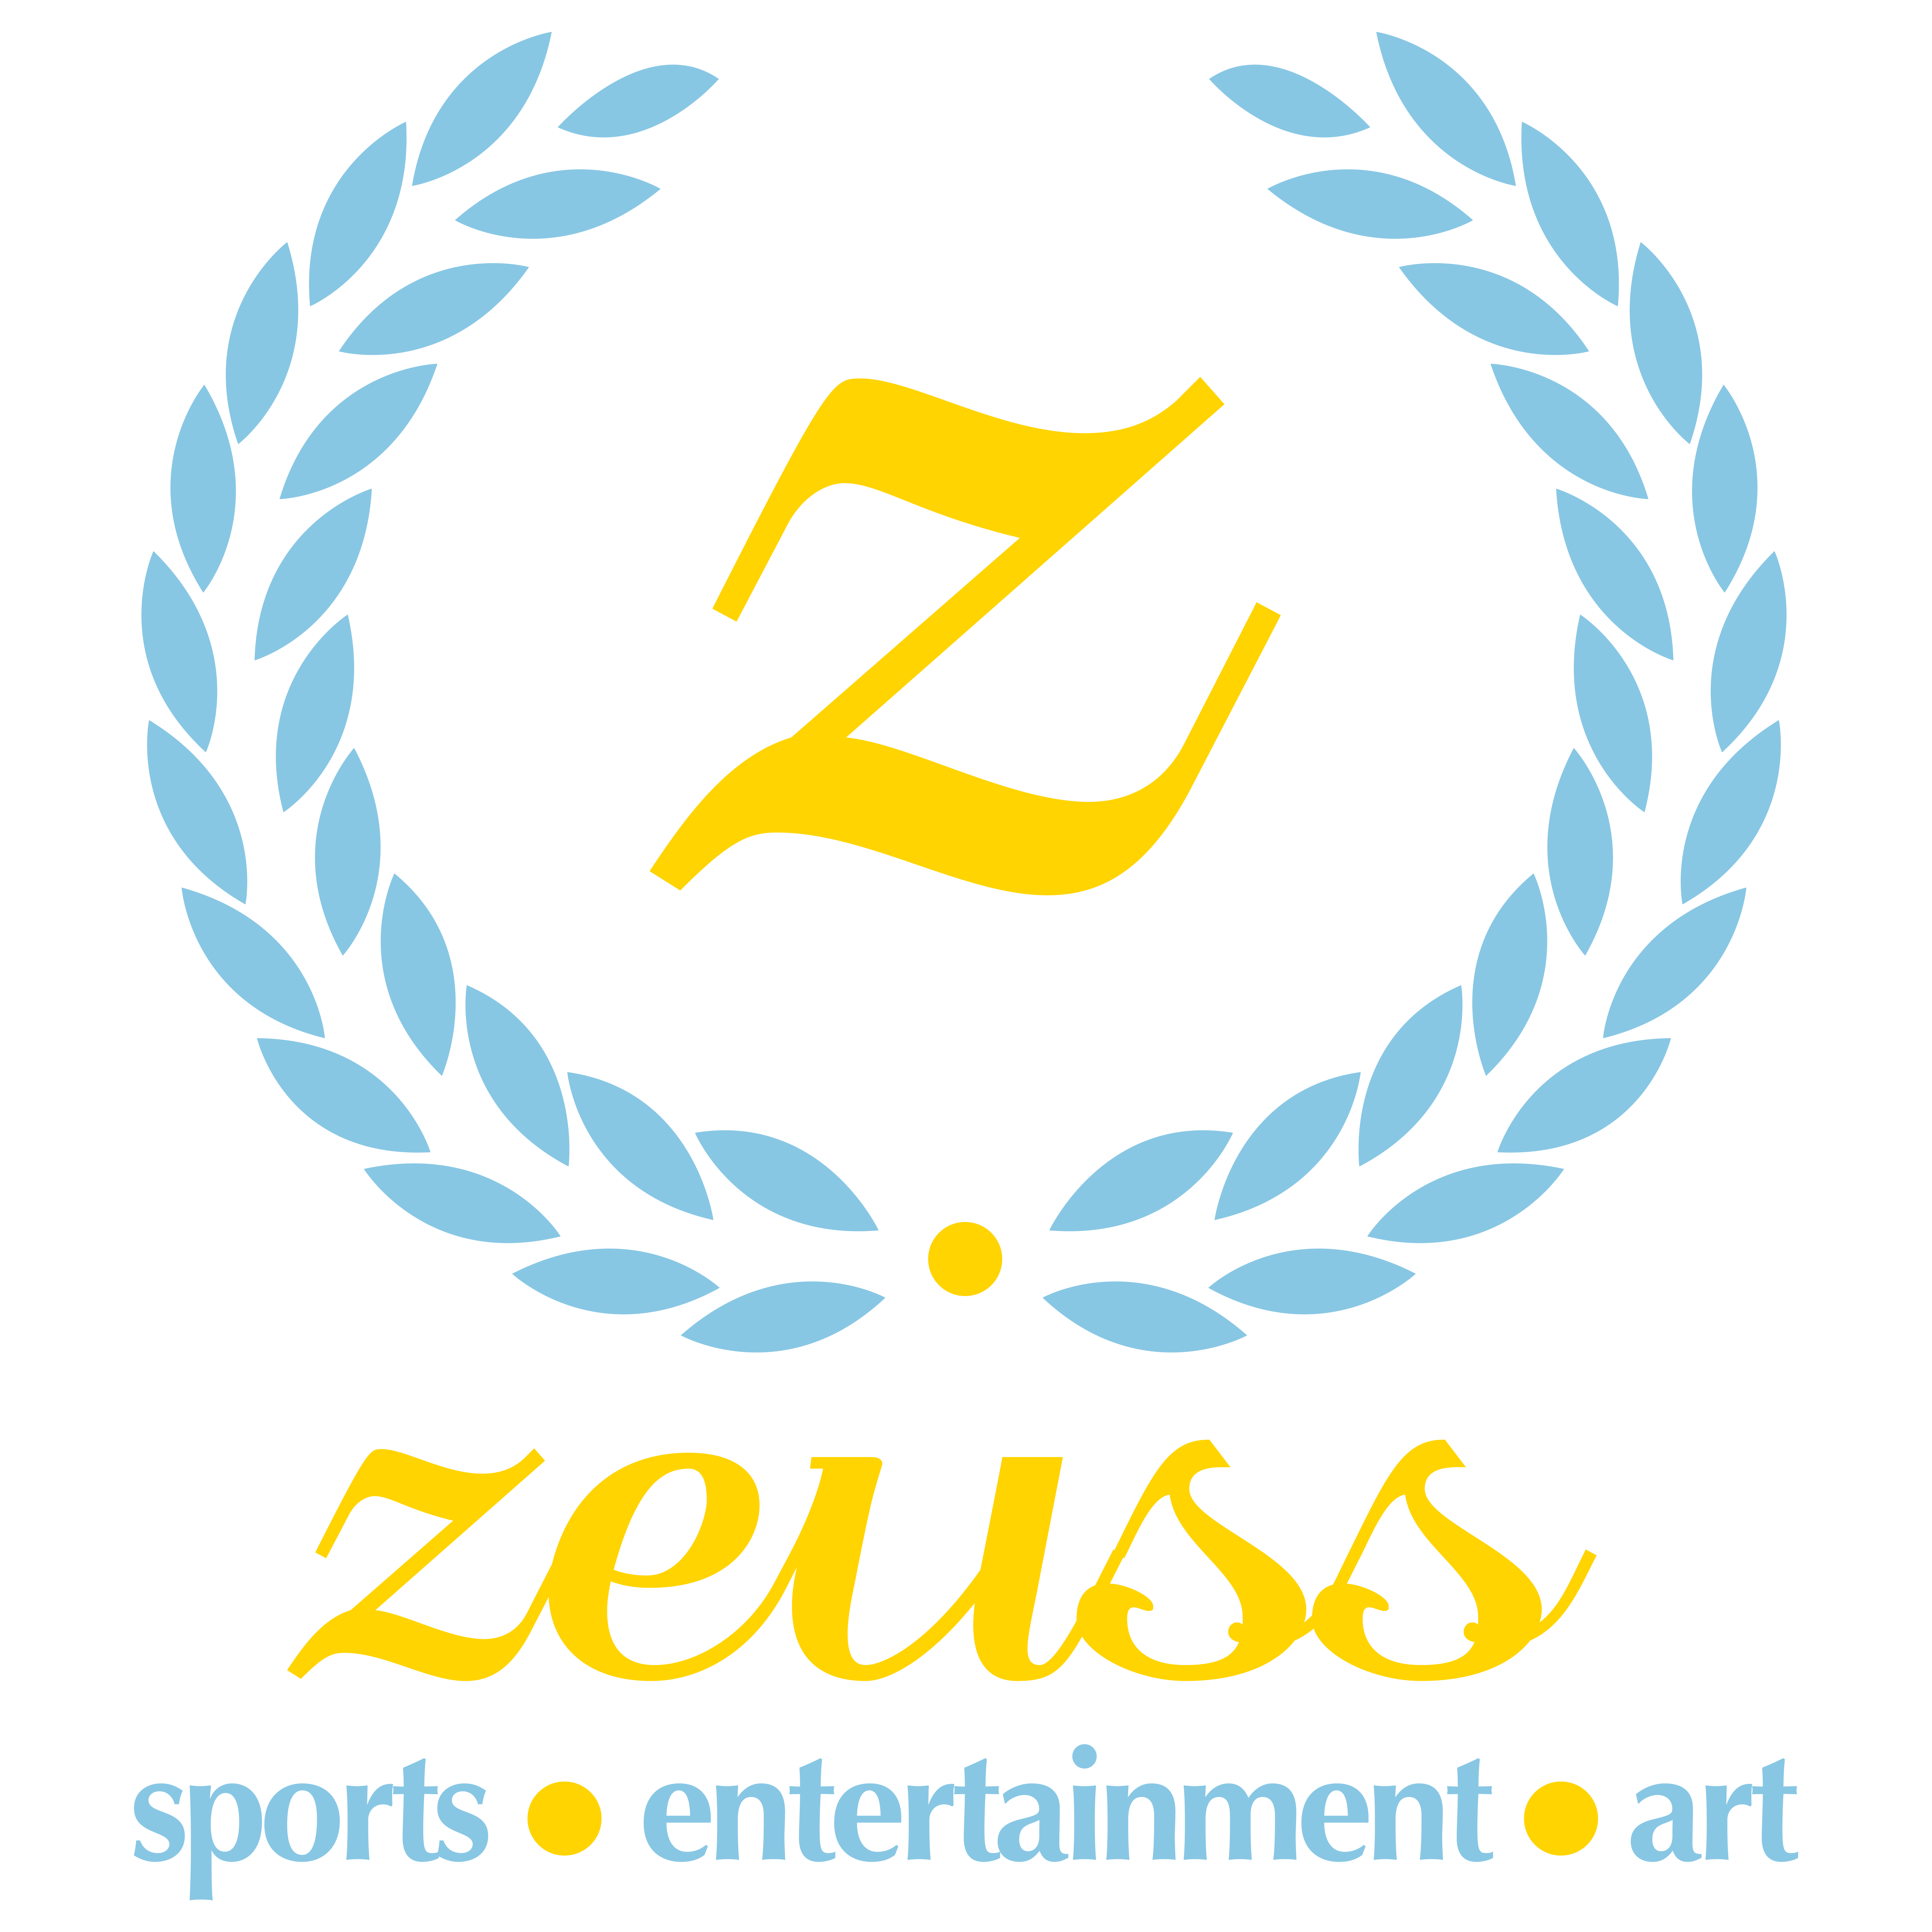 Zeuss Sports Entertainment Art